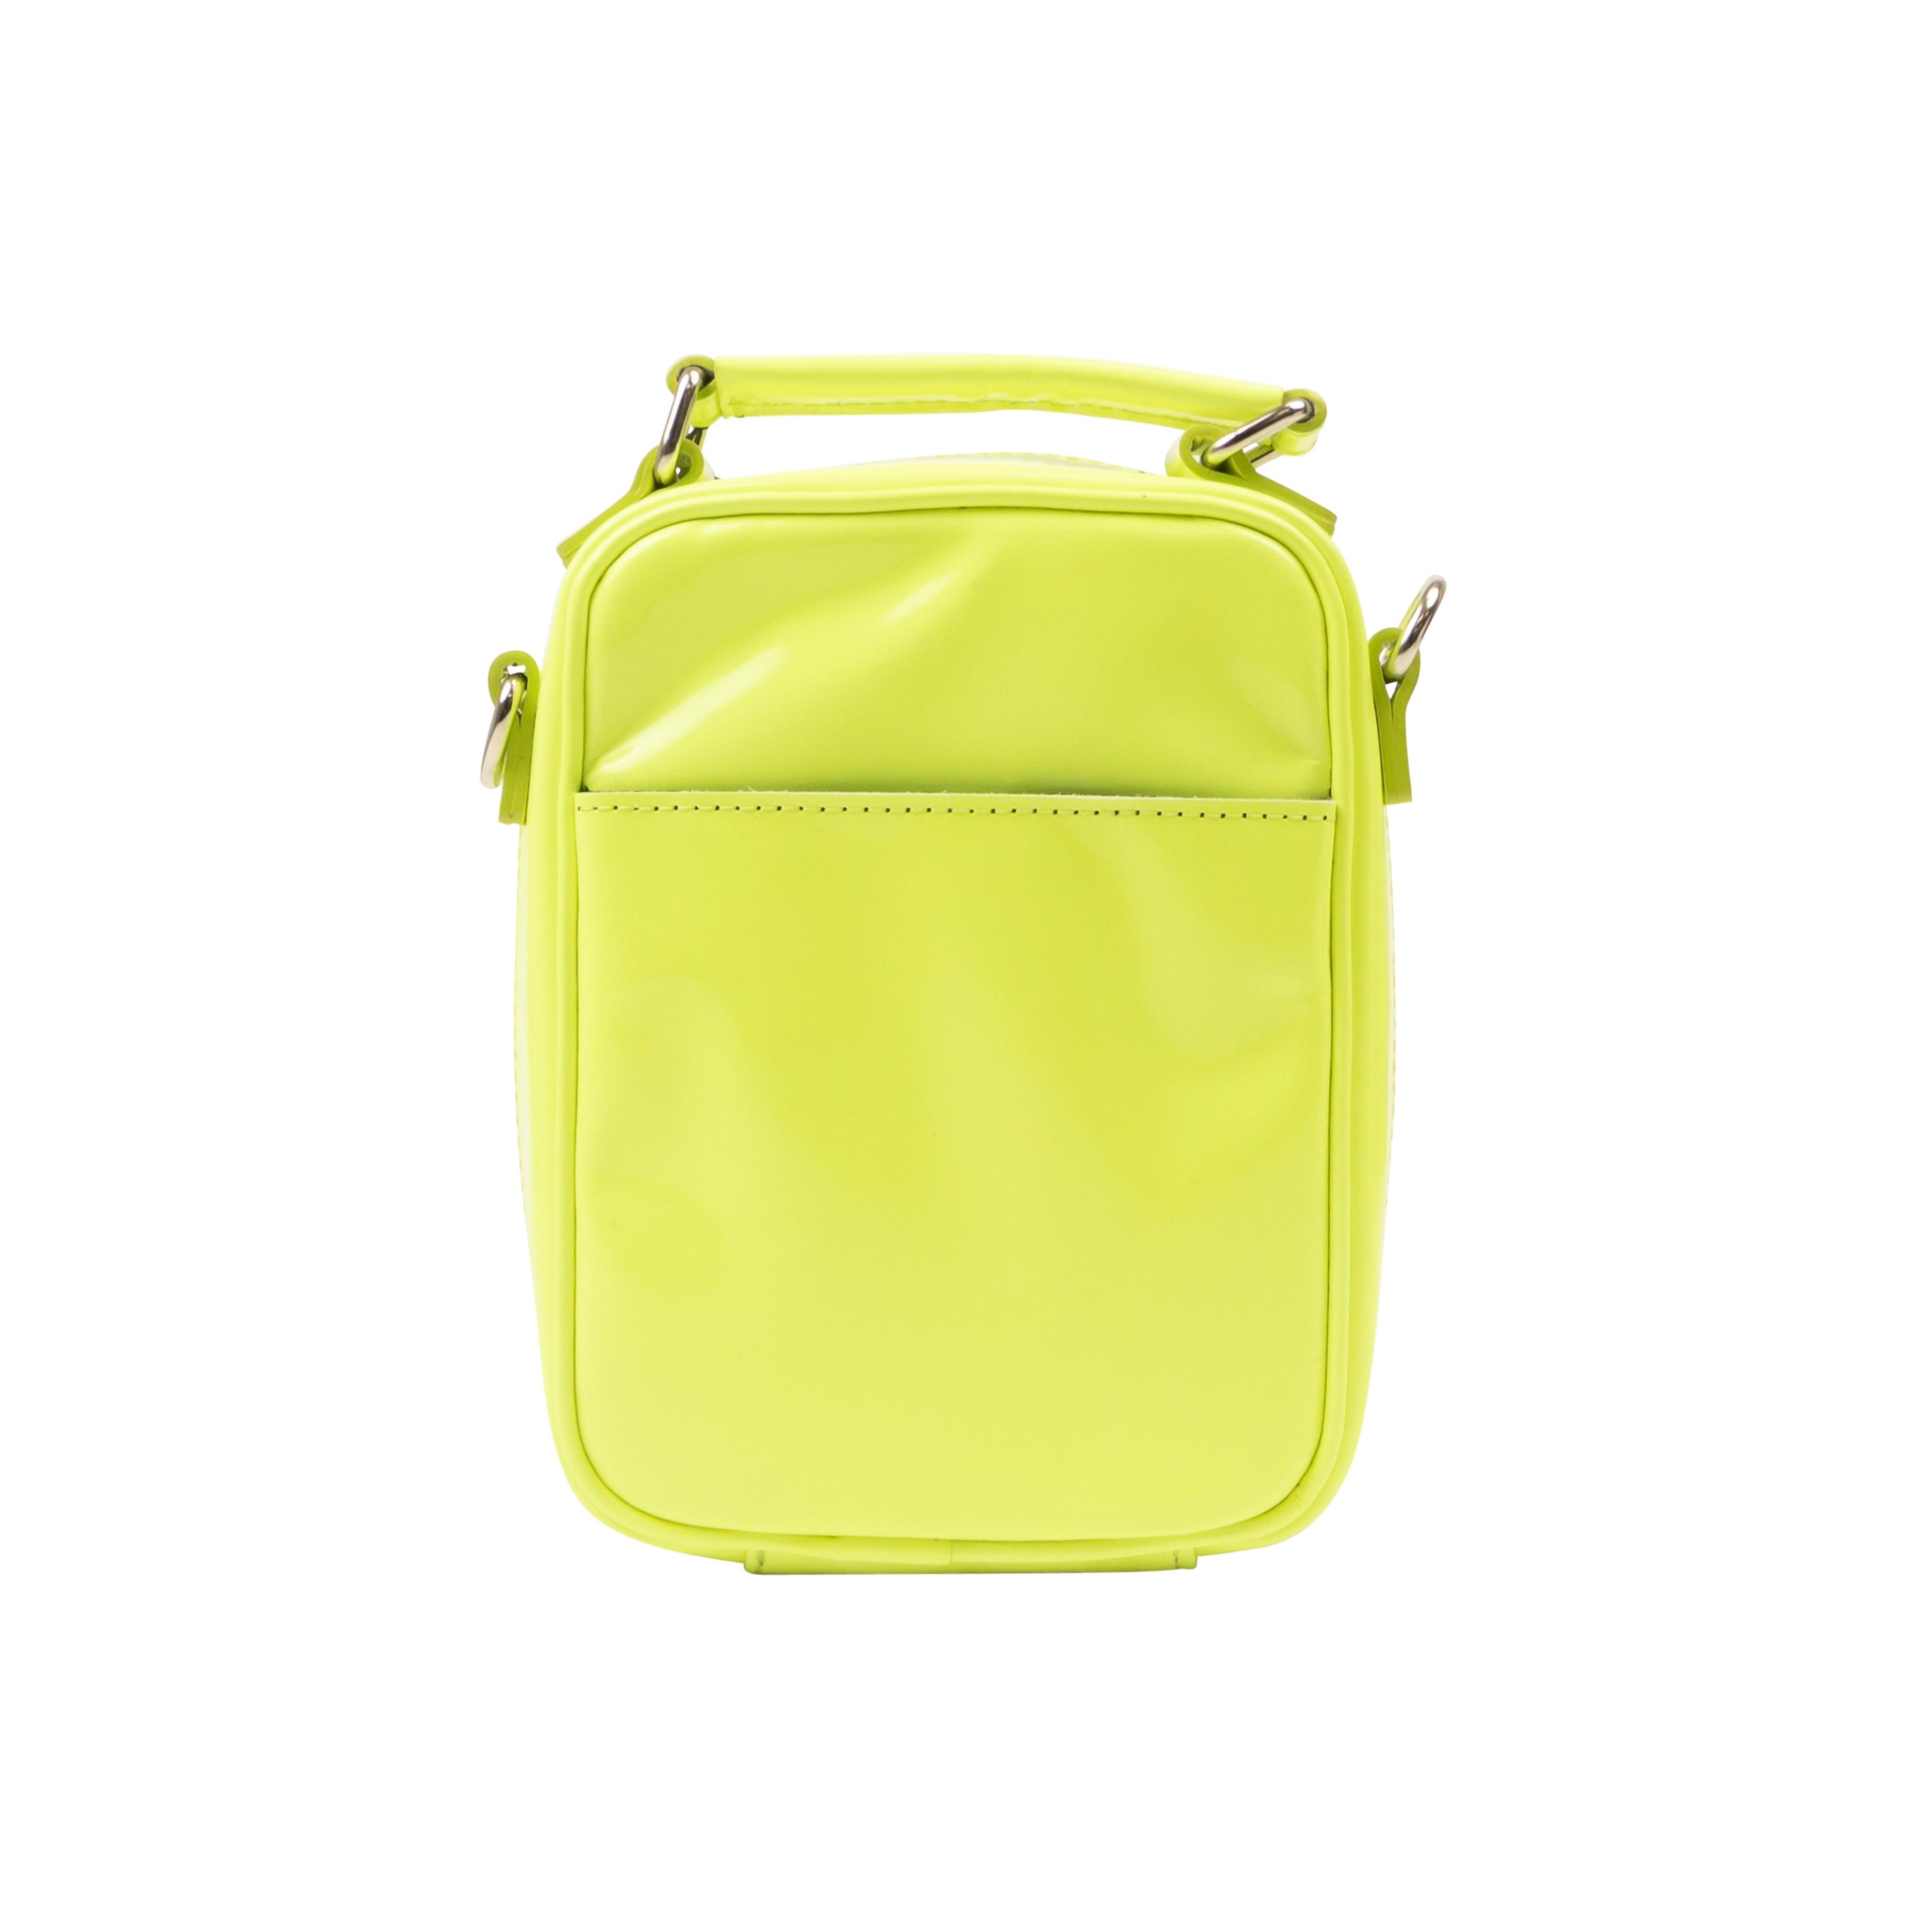 Yellow Mini Crossbody Handbag